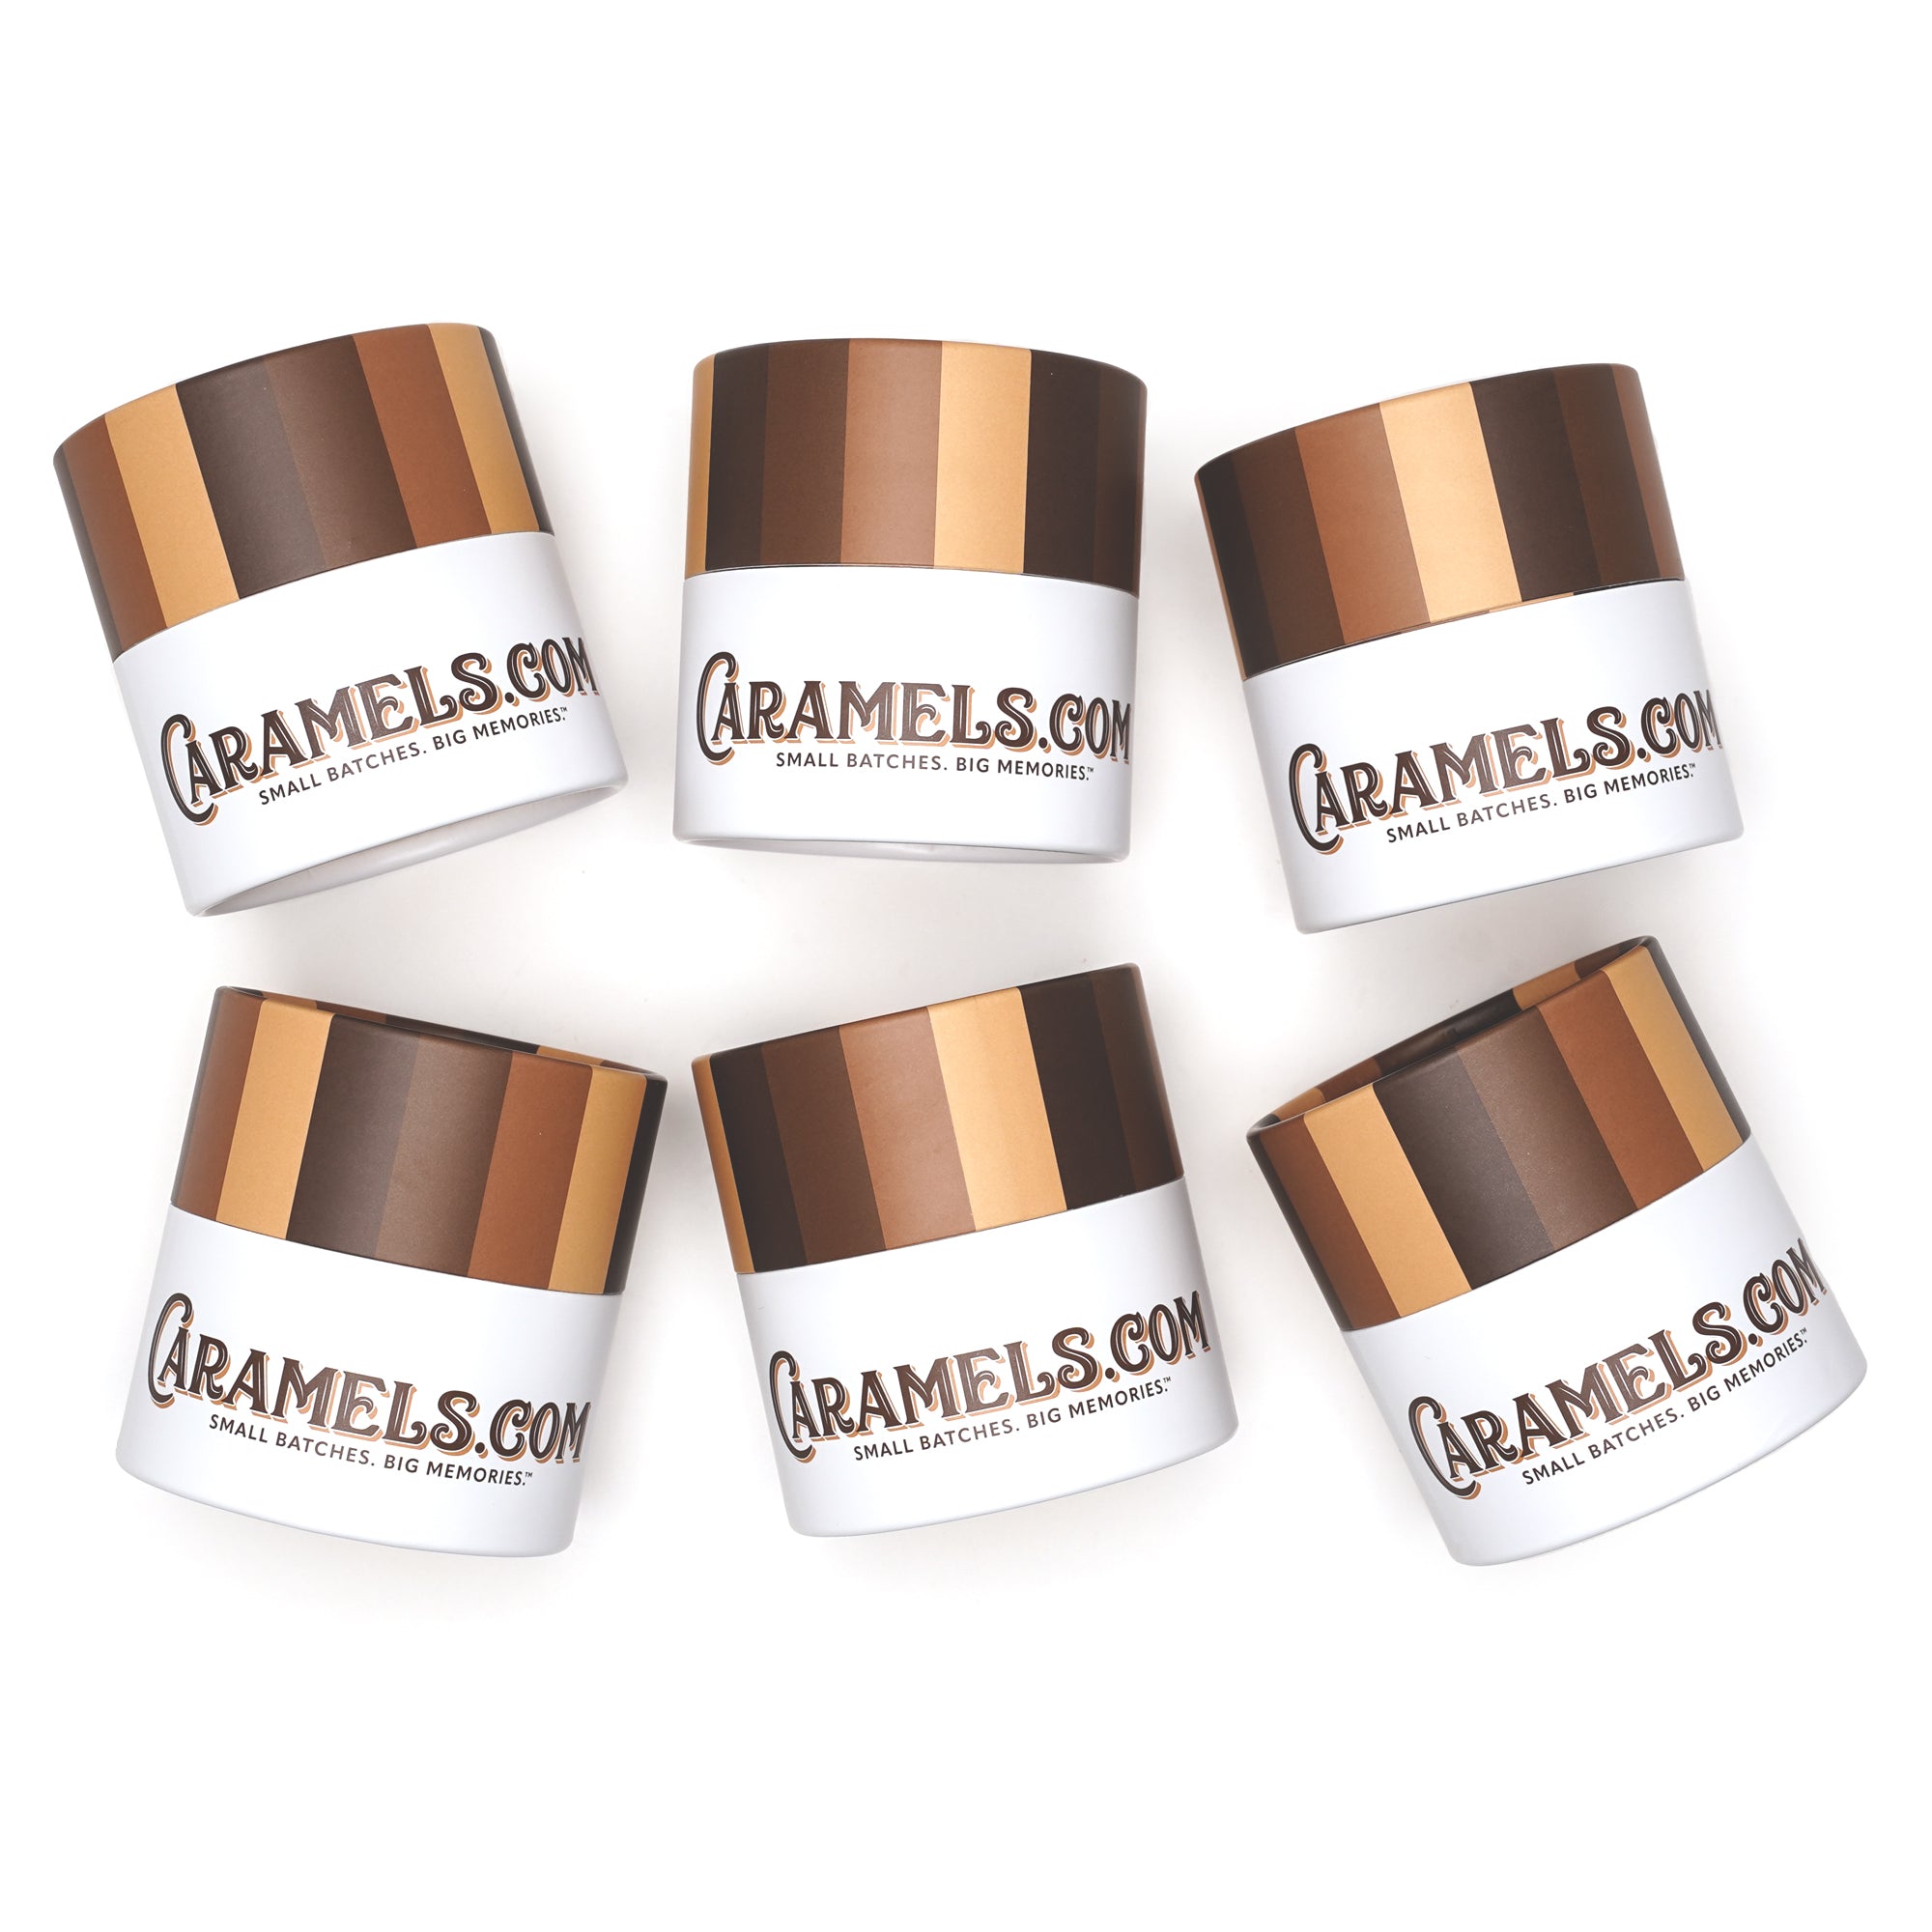 Try Our Sampler Packs – Caramels.com